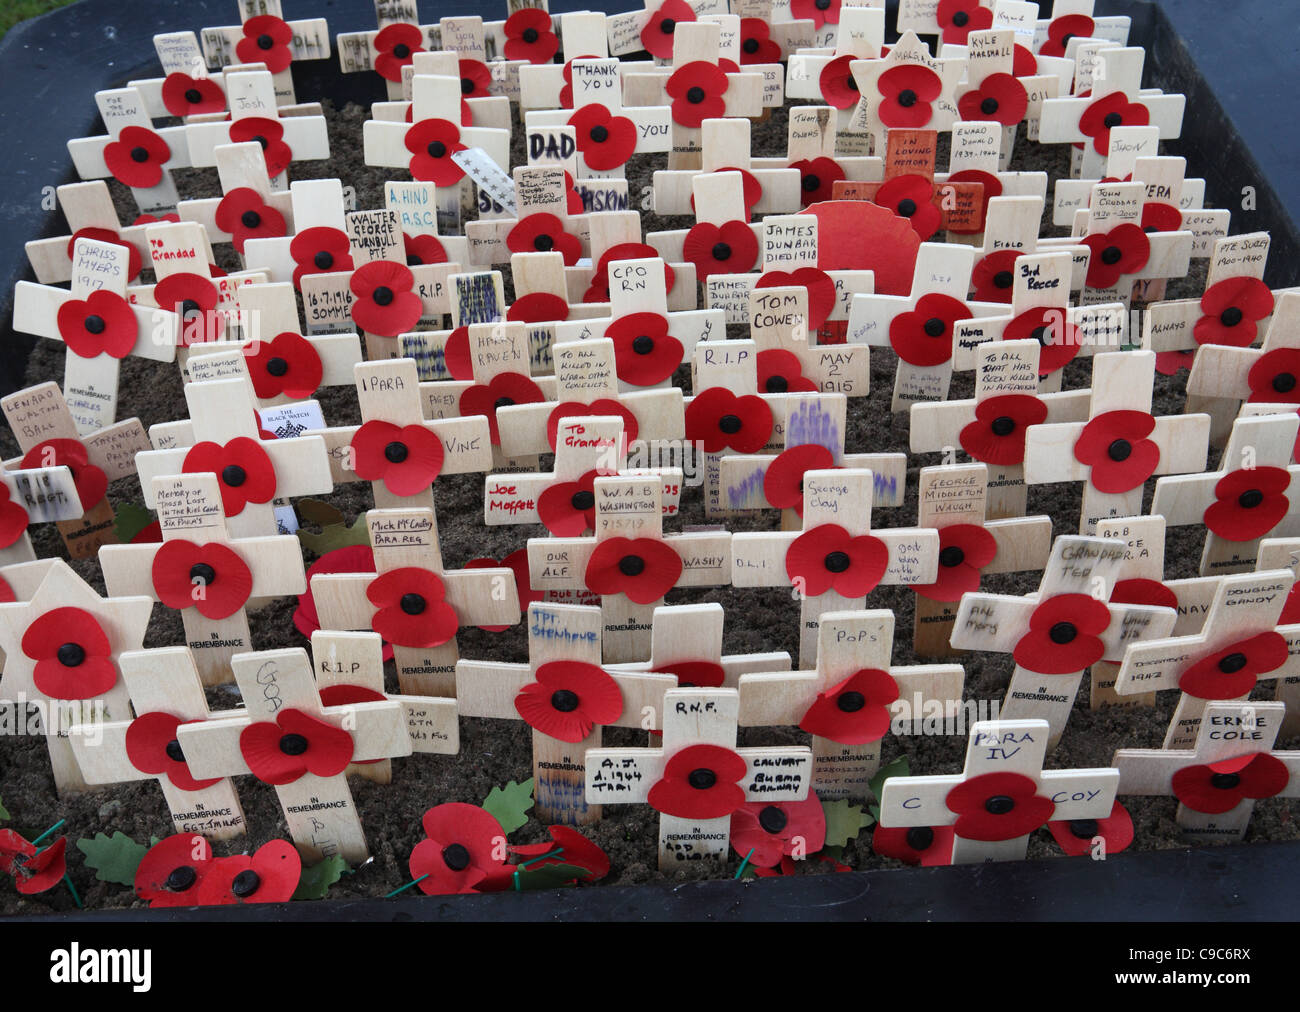 Un mémorial pour les victimes de guerre, de coquelicots et de petites croix de bois, Eldon Square, Newcastle, Angleterre du Nord-Est, Royaume-Uni Banque D'Images